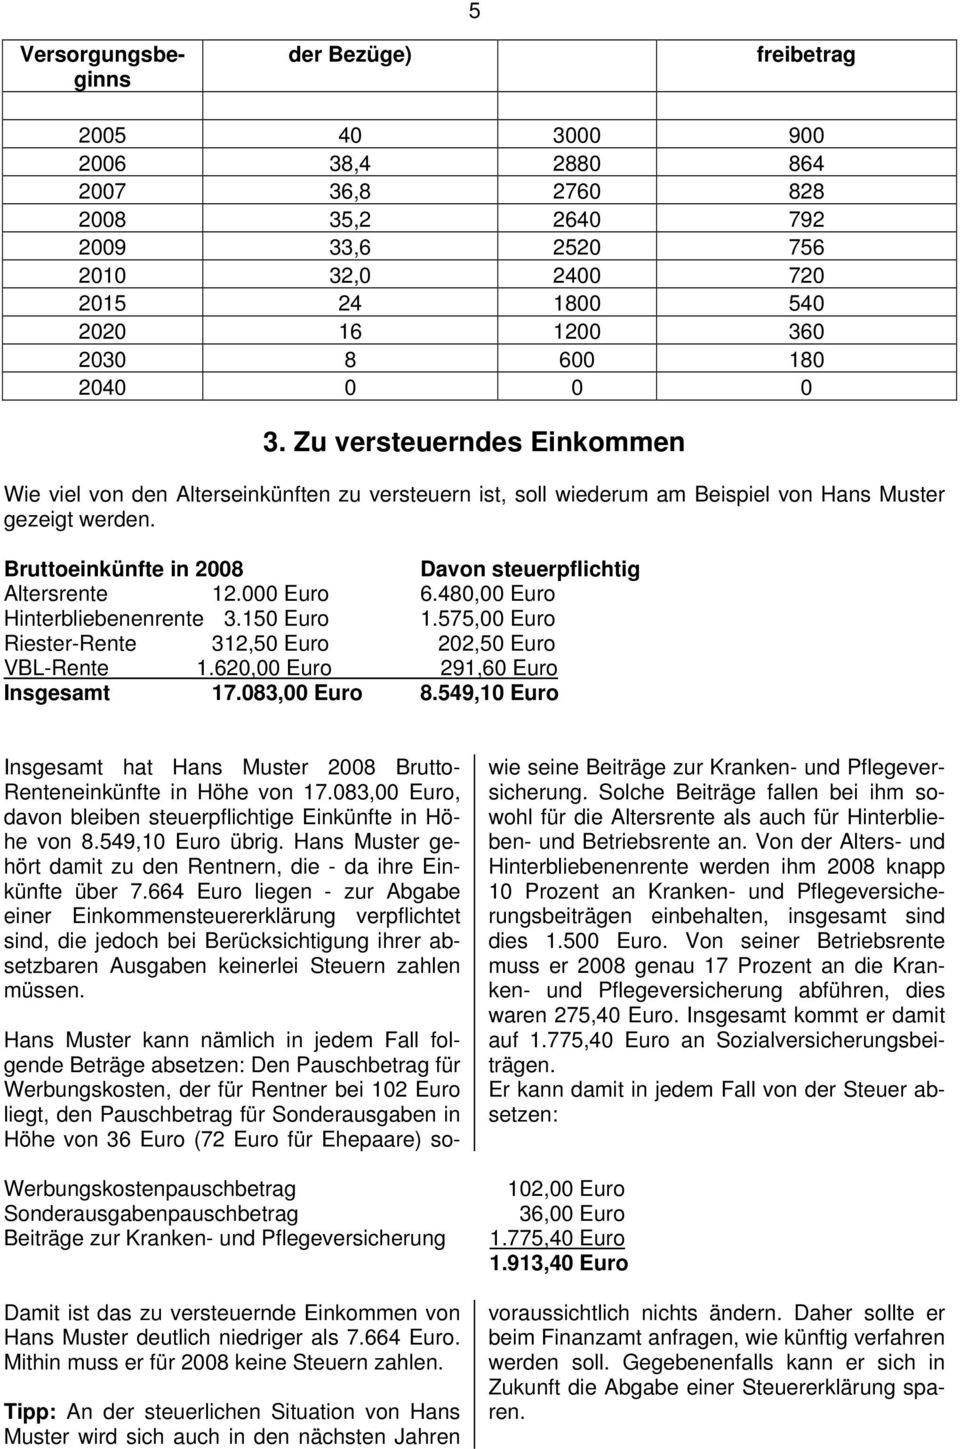 Bruttoeinkünfte in 2008 Davon steuerpflichtig Altersrente 12.000 Euro 6.480,00 Euro Hinterbliebenenrente 3.150 Euro 1.575,00 Euro Riester-Rente 312,50 Euro 202,50 Euro VBL-Rente 1.